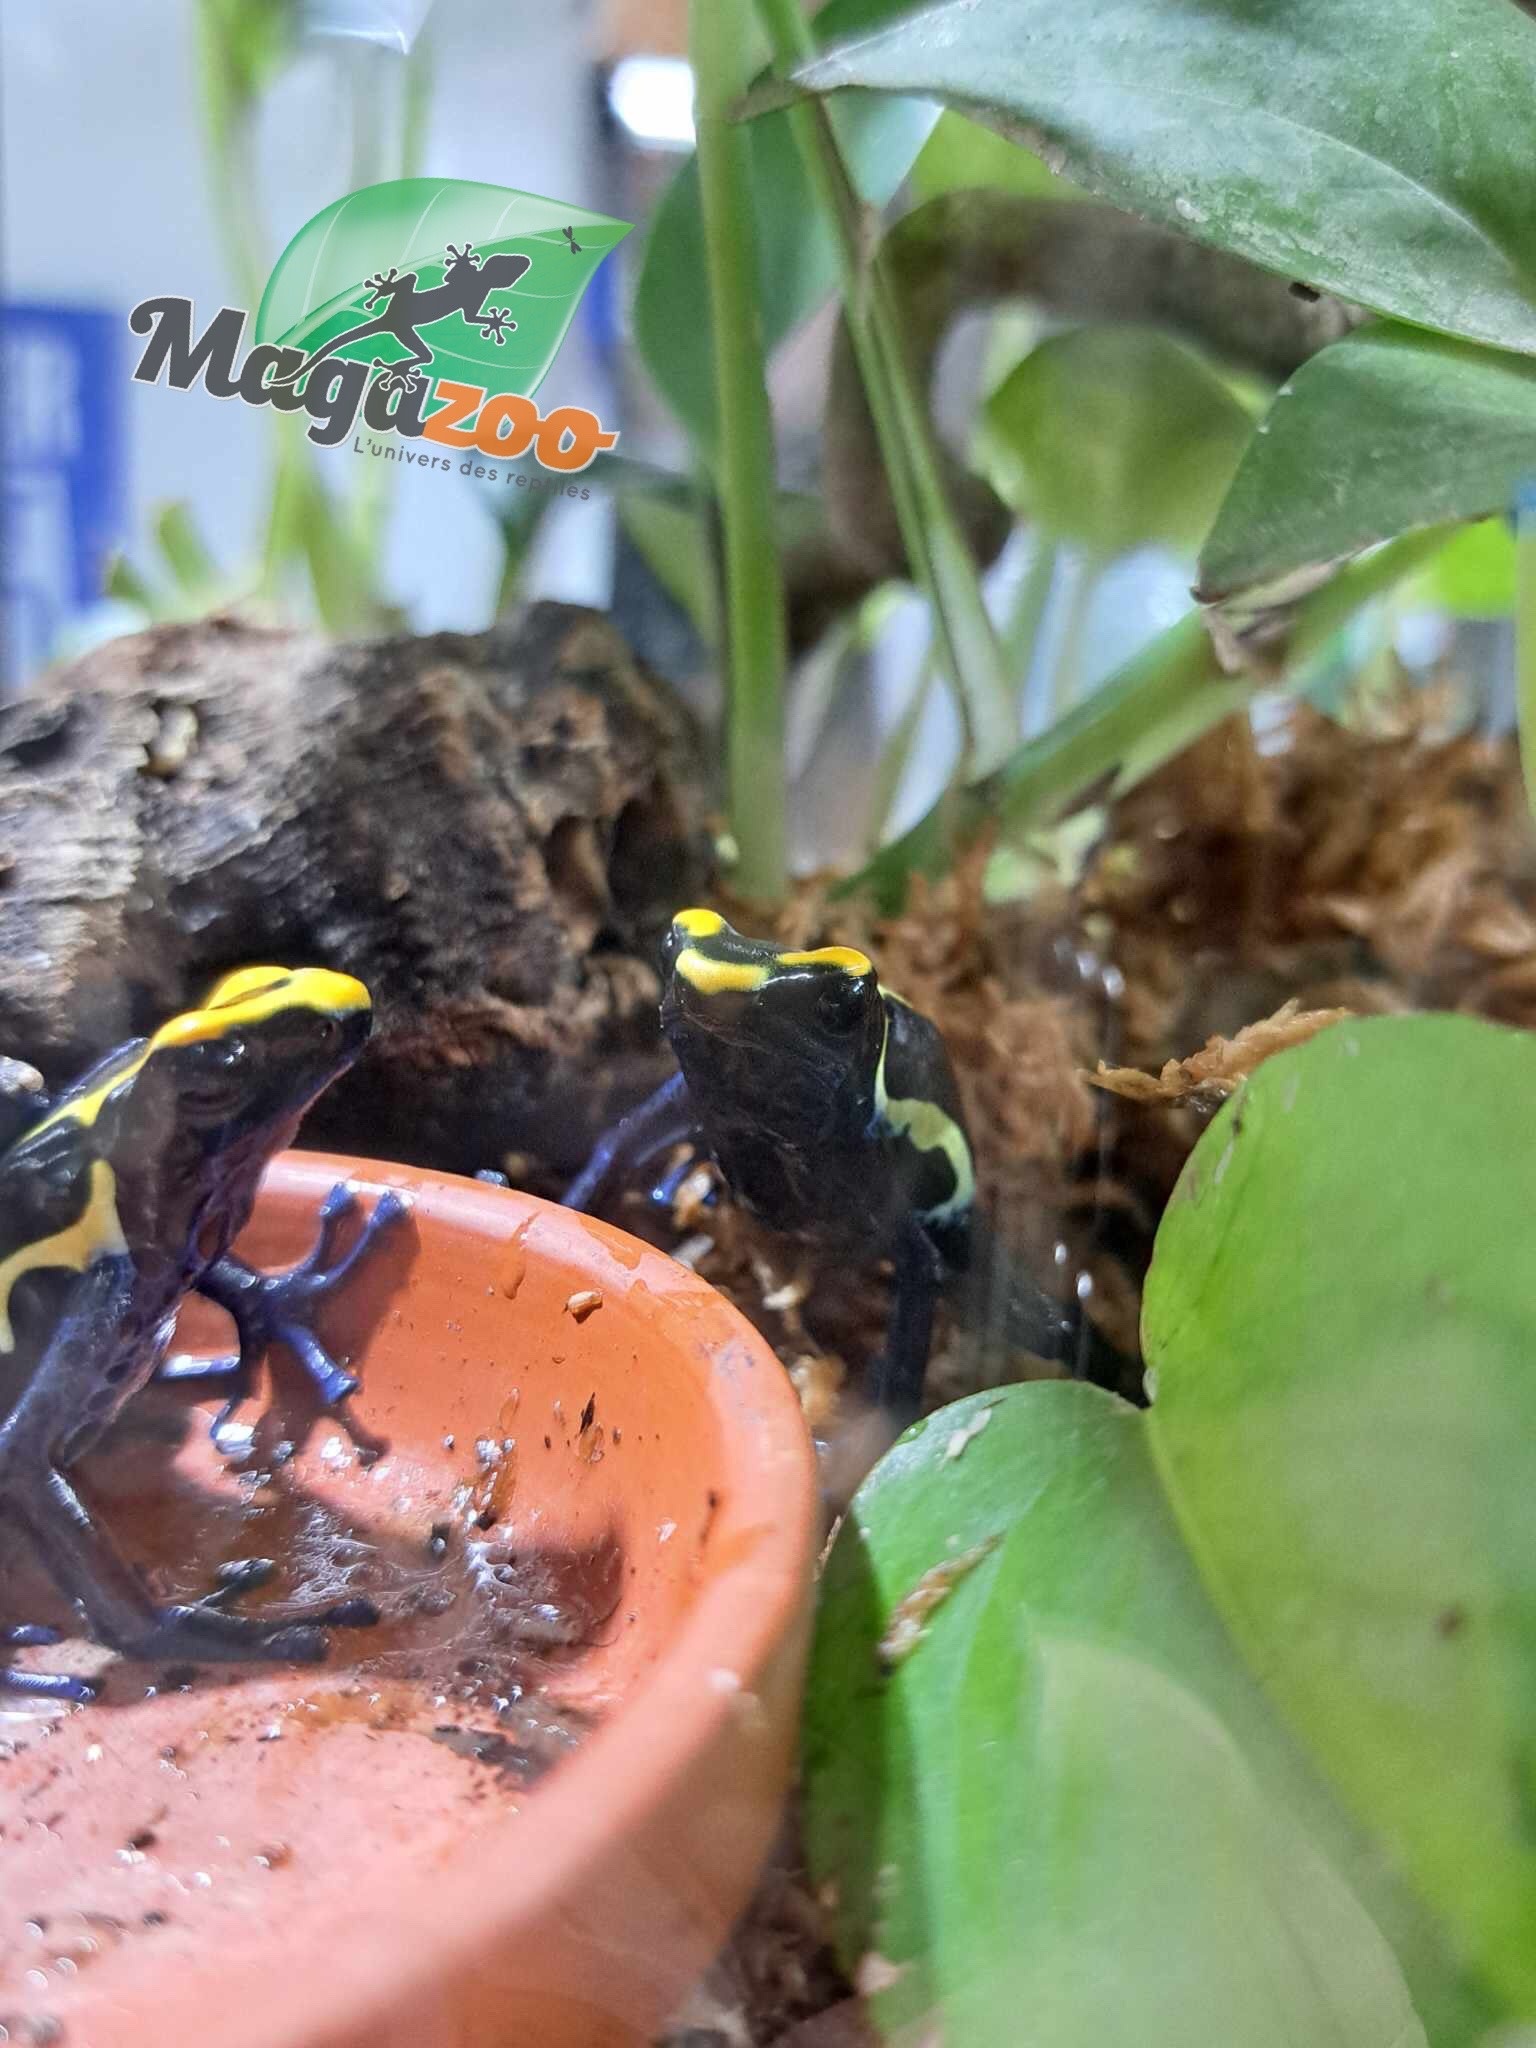 Magazoo Cobalt tinctorius poison Dart frog